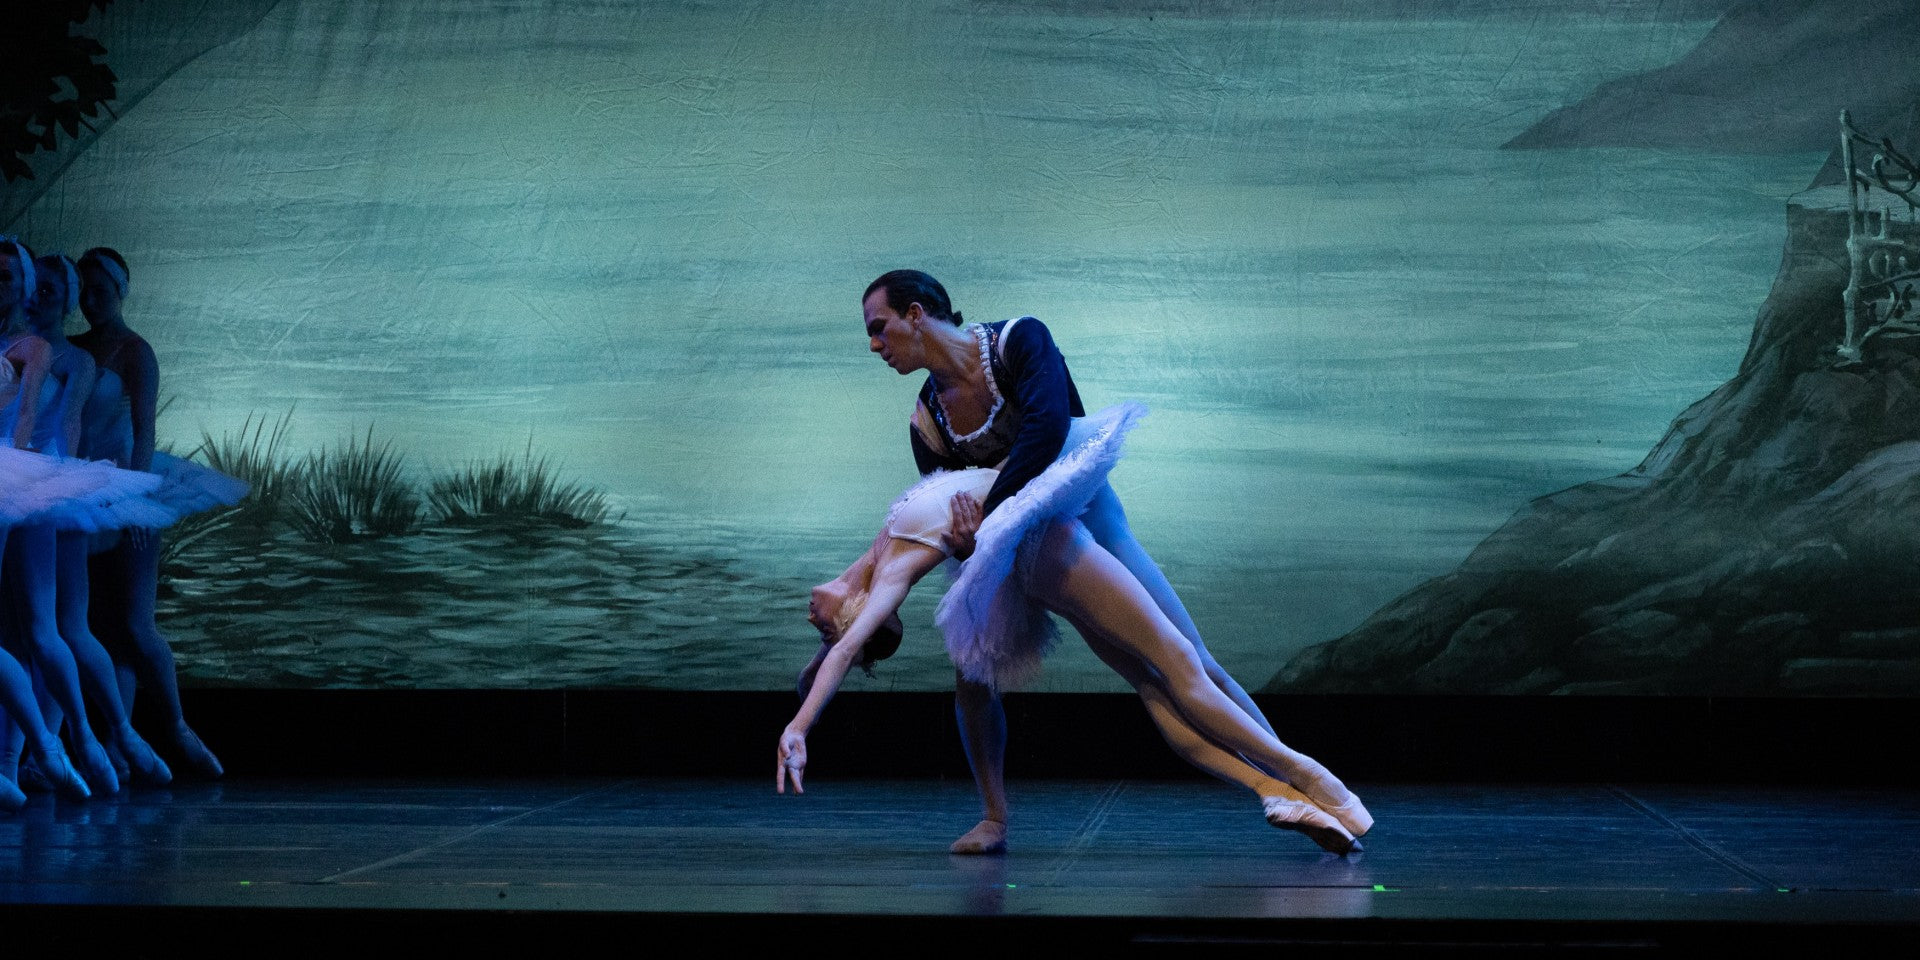 El teatro Tívoli abrirá su telón del 12 al 23 de julio para acoger ‘El lago de los cisnes’, del Ballet de Kiev